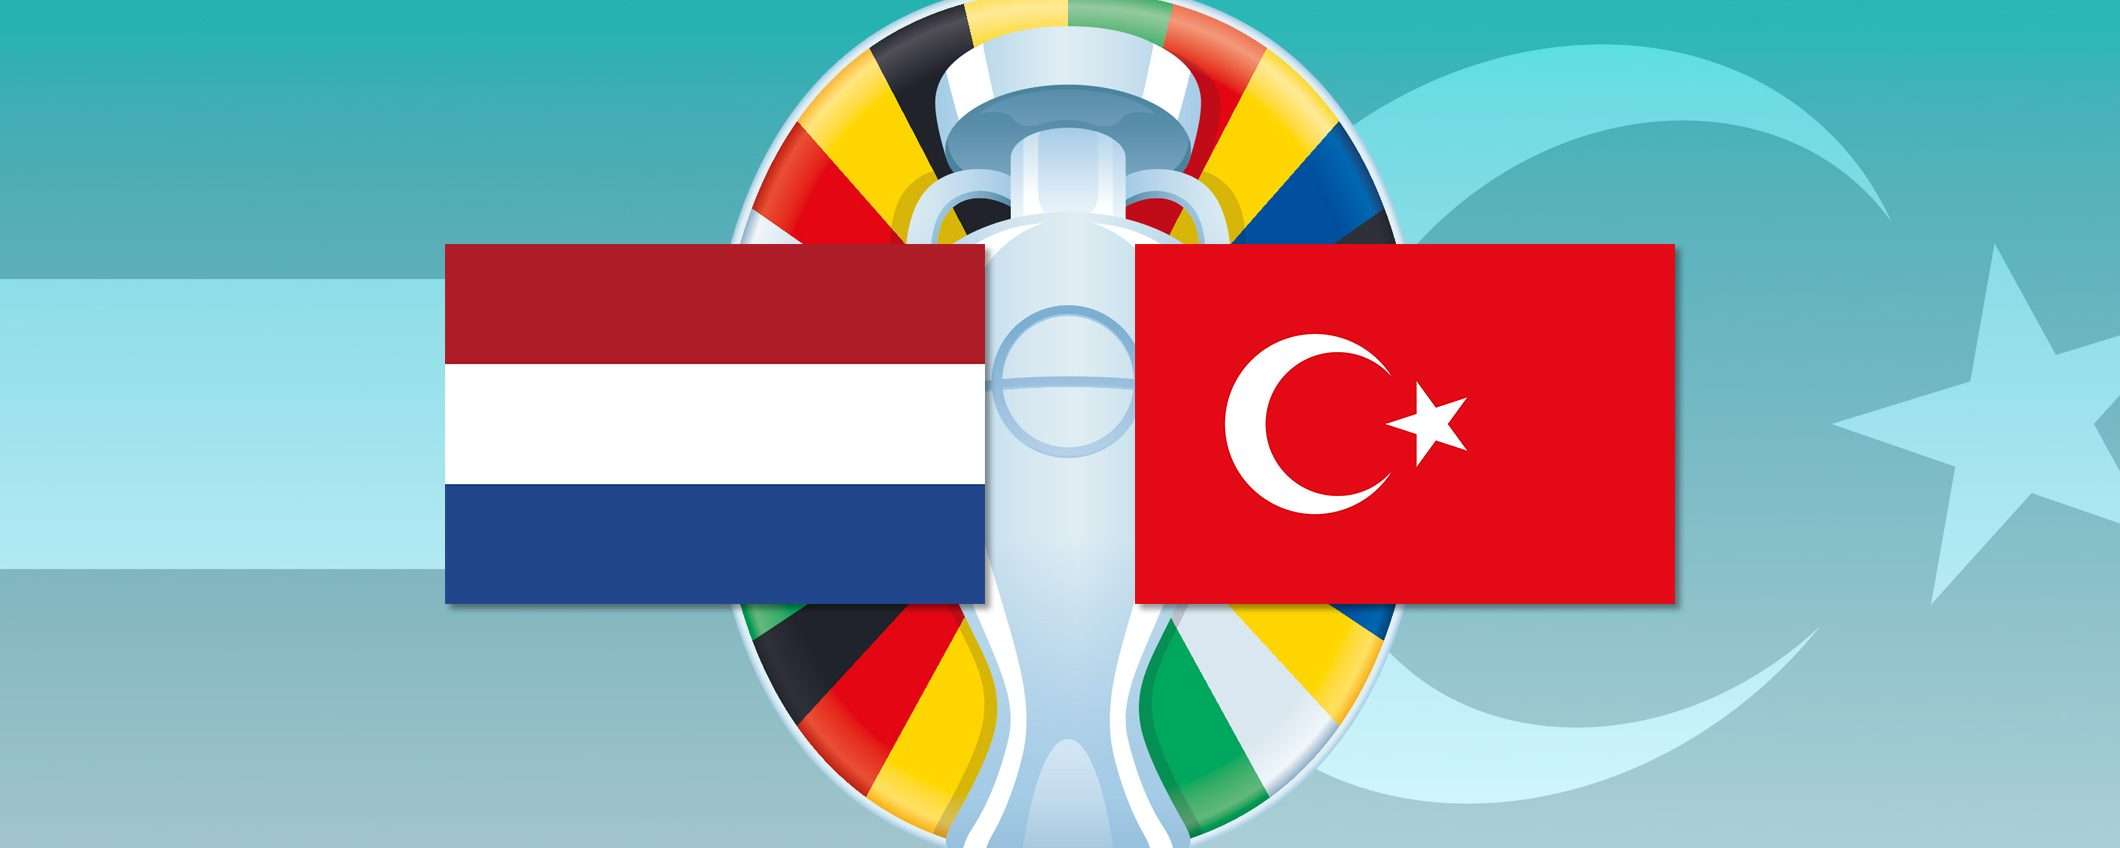 Come vedere Olanda-Turchia in diretta streaming dall'estero